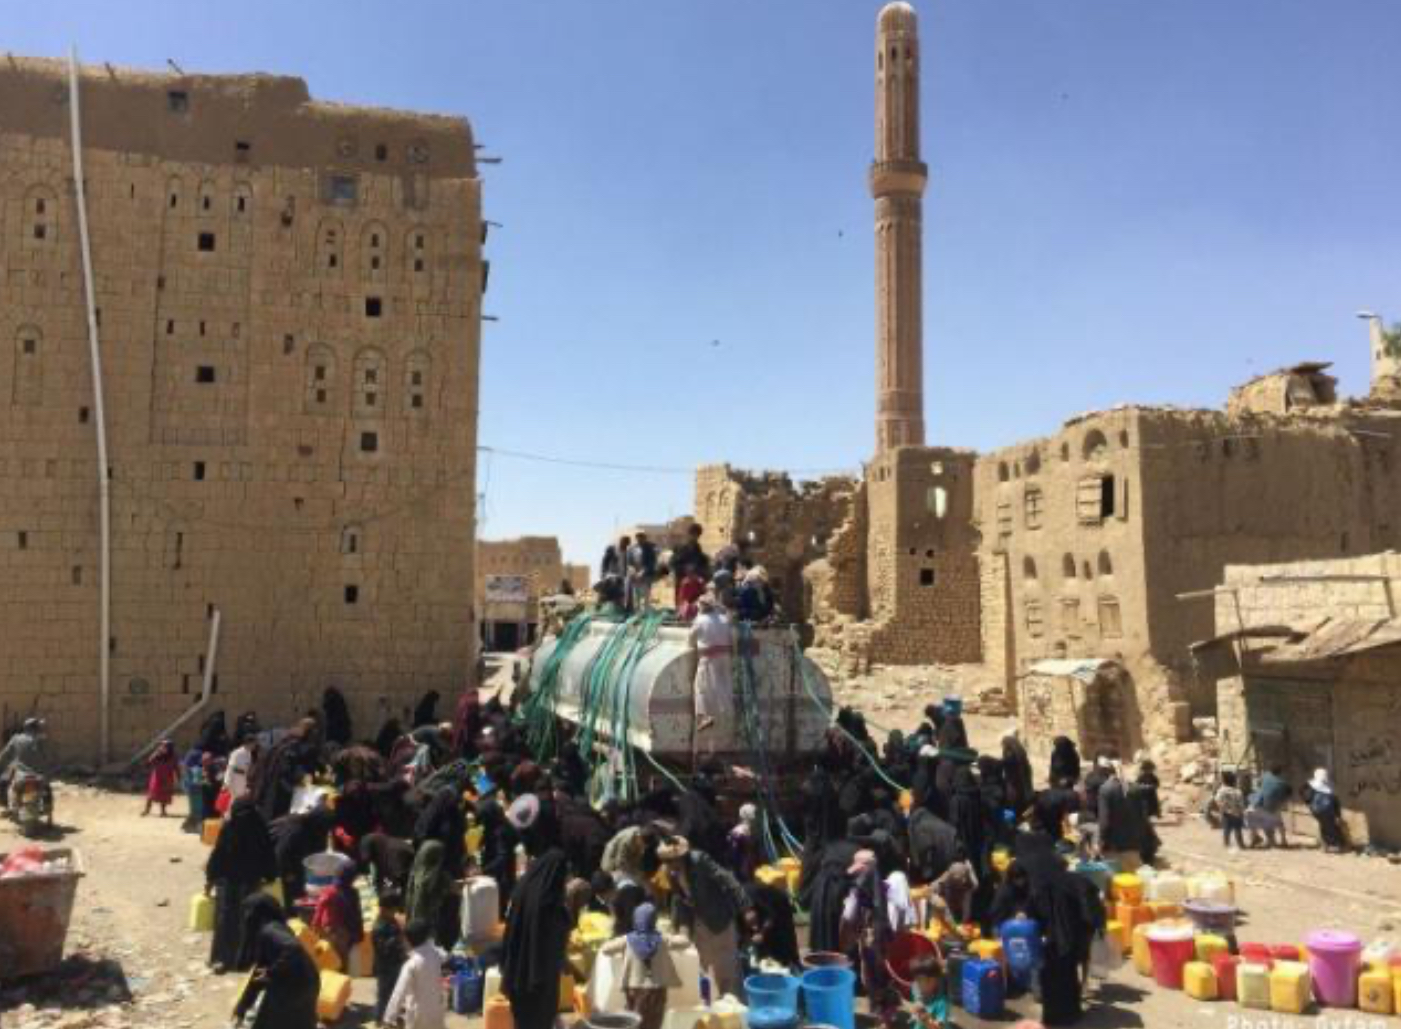 بعد أزمة المشتقات النفطية أزمة جديدة تعصف بسكان العاصمة صنعاء